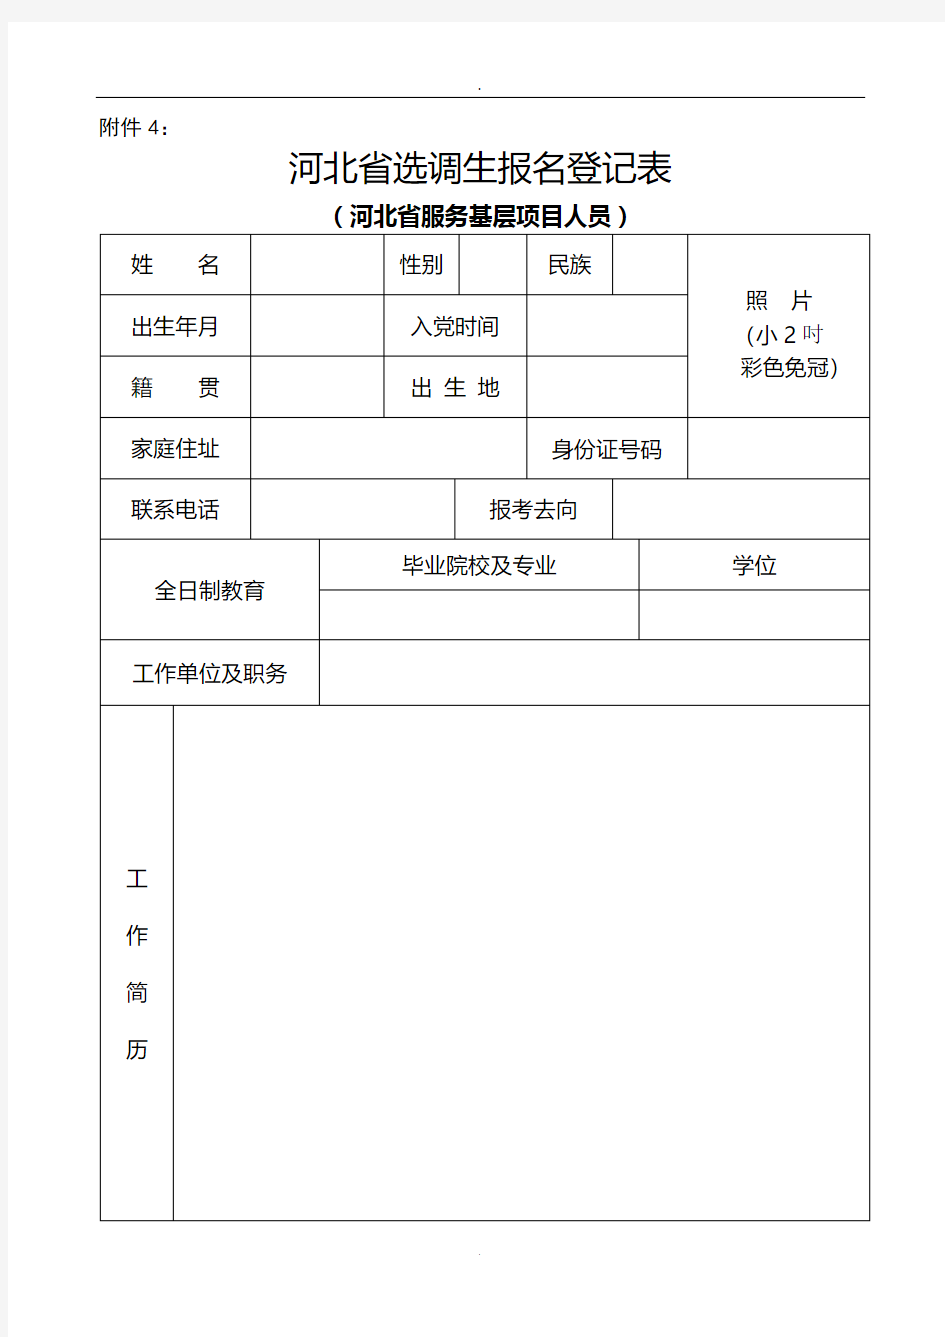 河北省选调生报名登记表(河北省服务基层项目人员)(式样)